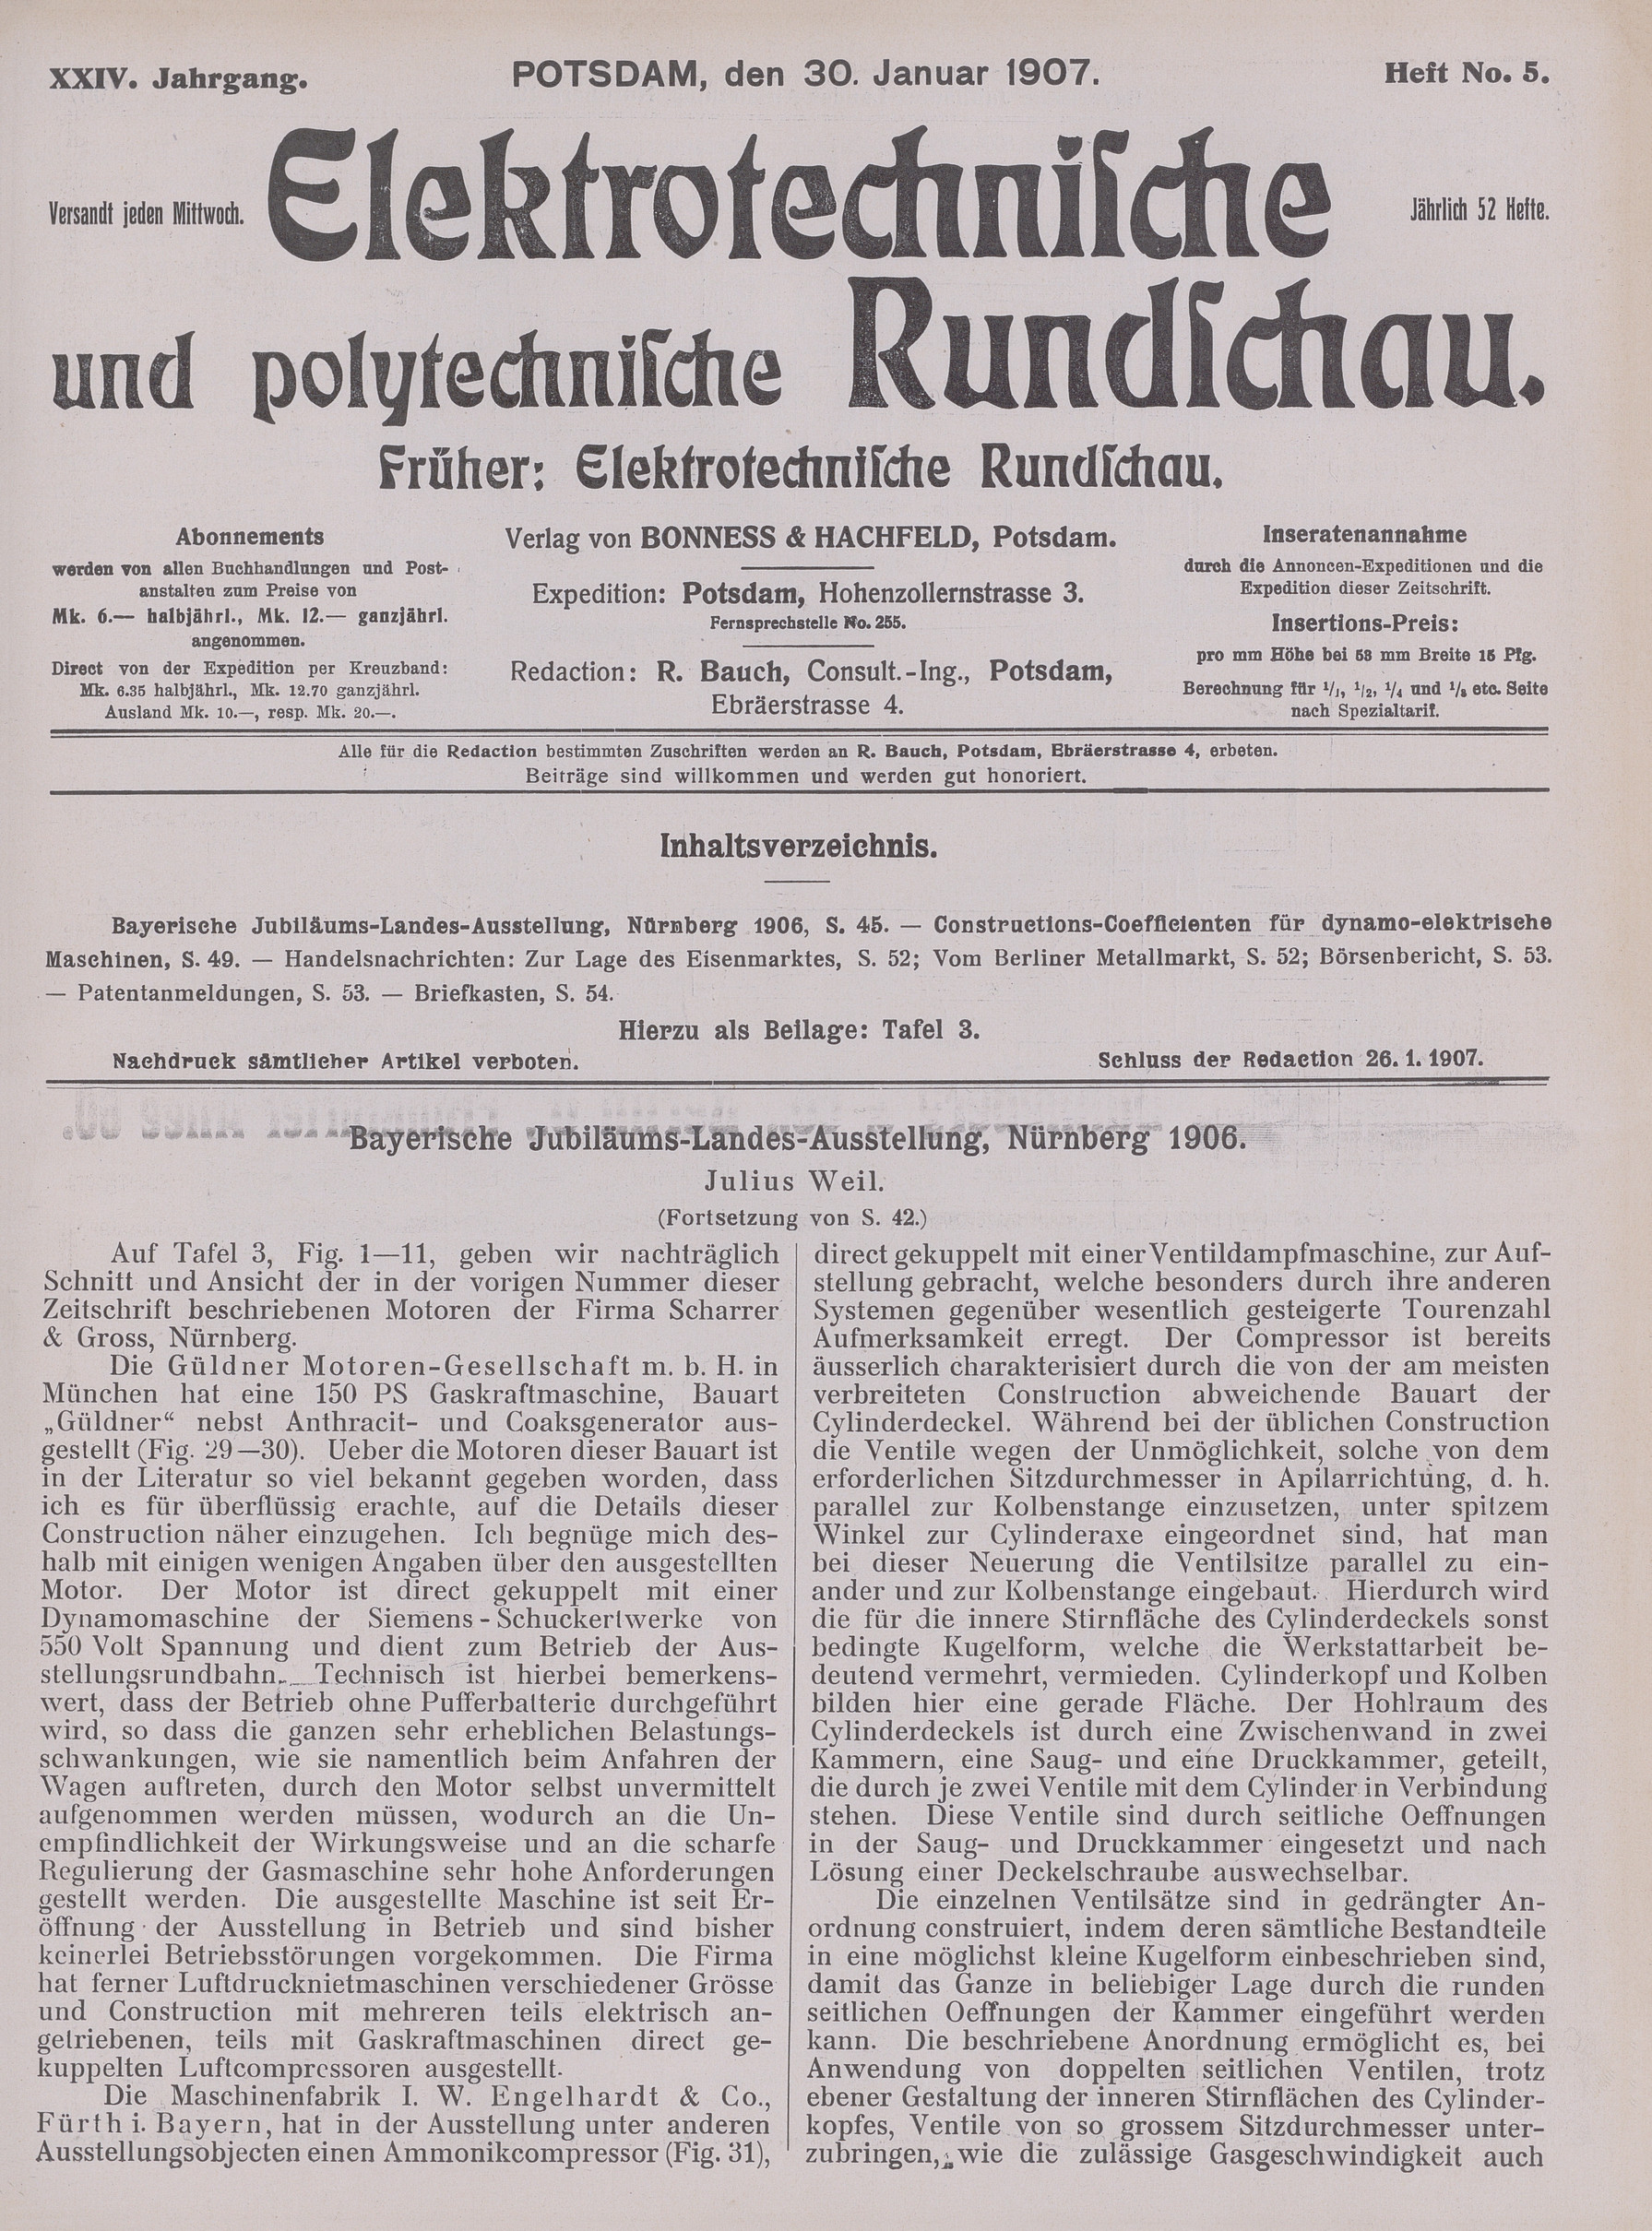 Elektrotechnische und polytechnische Rundschau, XXIV. Jahrgang, Heft No. 5